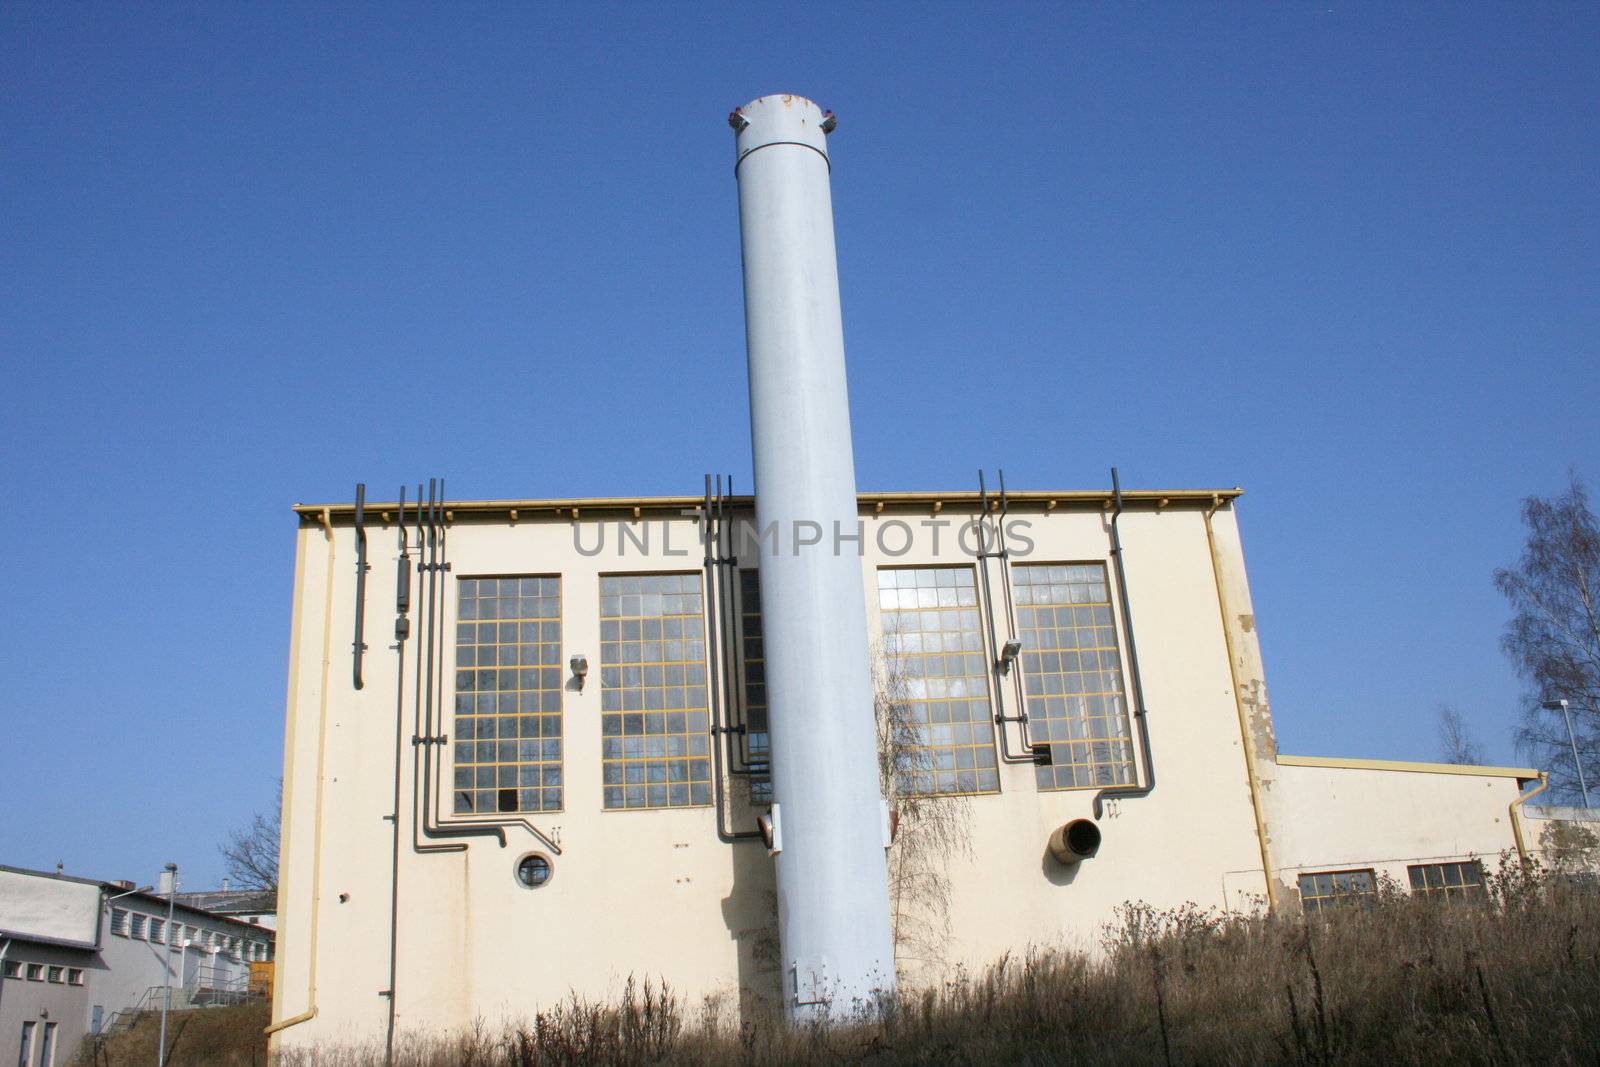 Altes Fernwärme Heizwerk mit hohem Schornstein	
Old district heating plant with a tall chimney